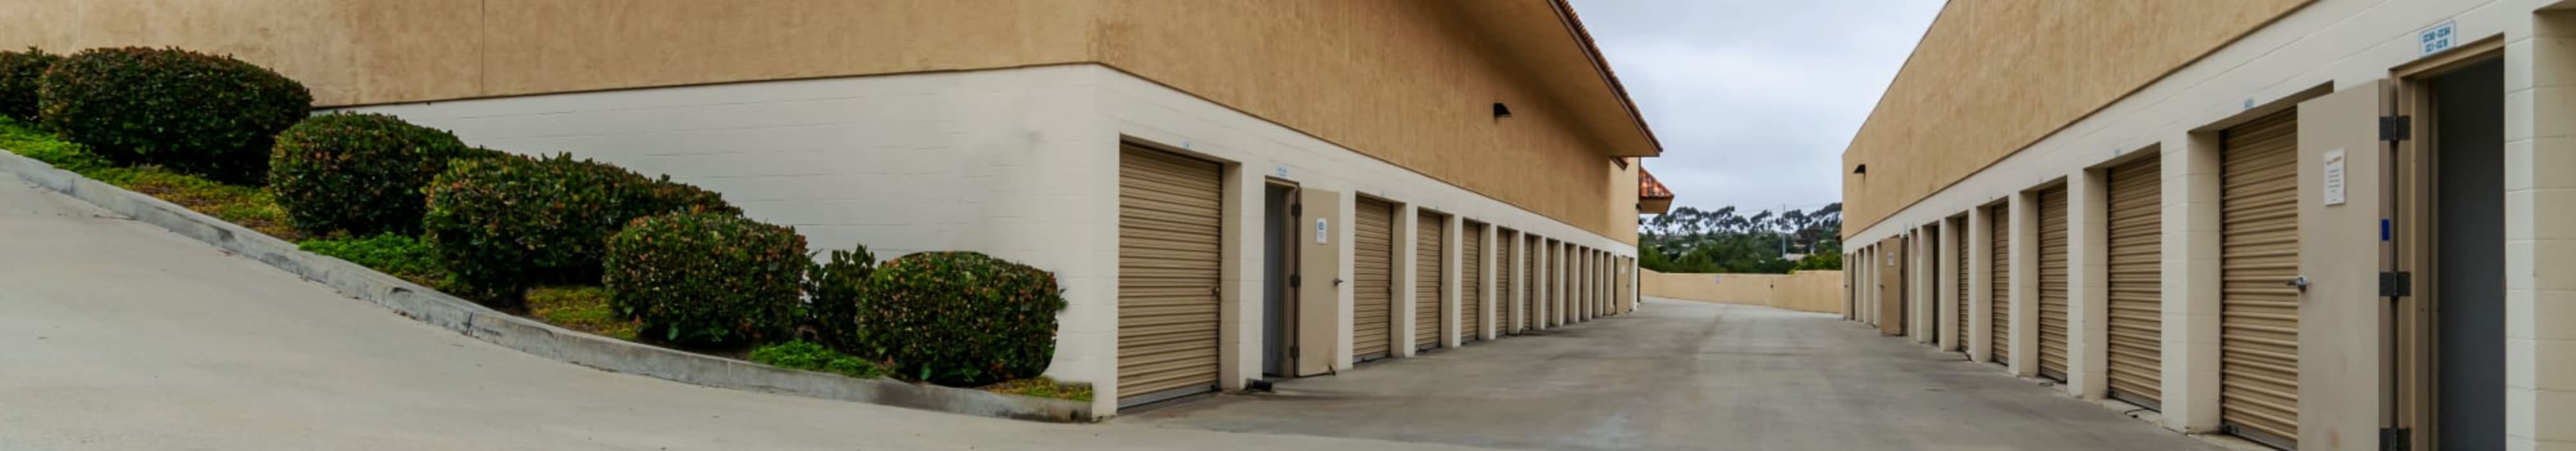 Outdoor units at Encinitas Self Storage in Encinitas, California